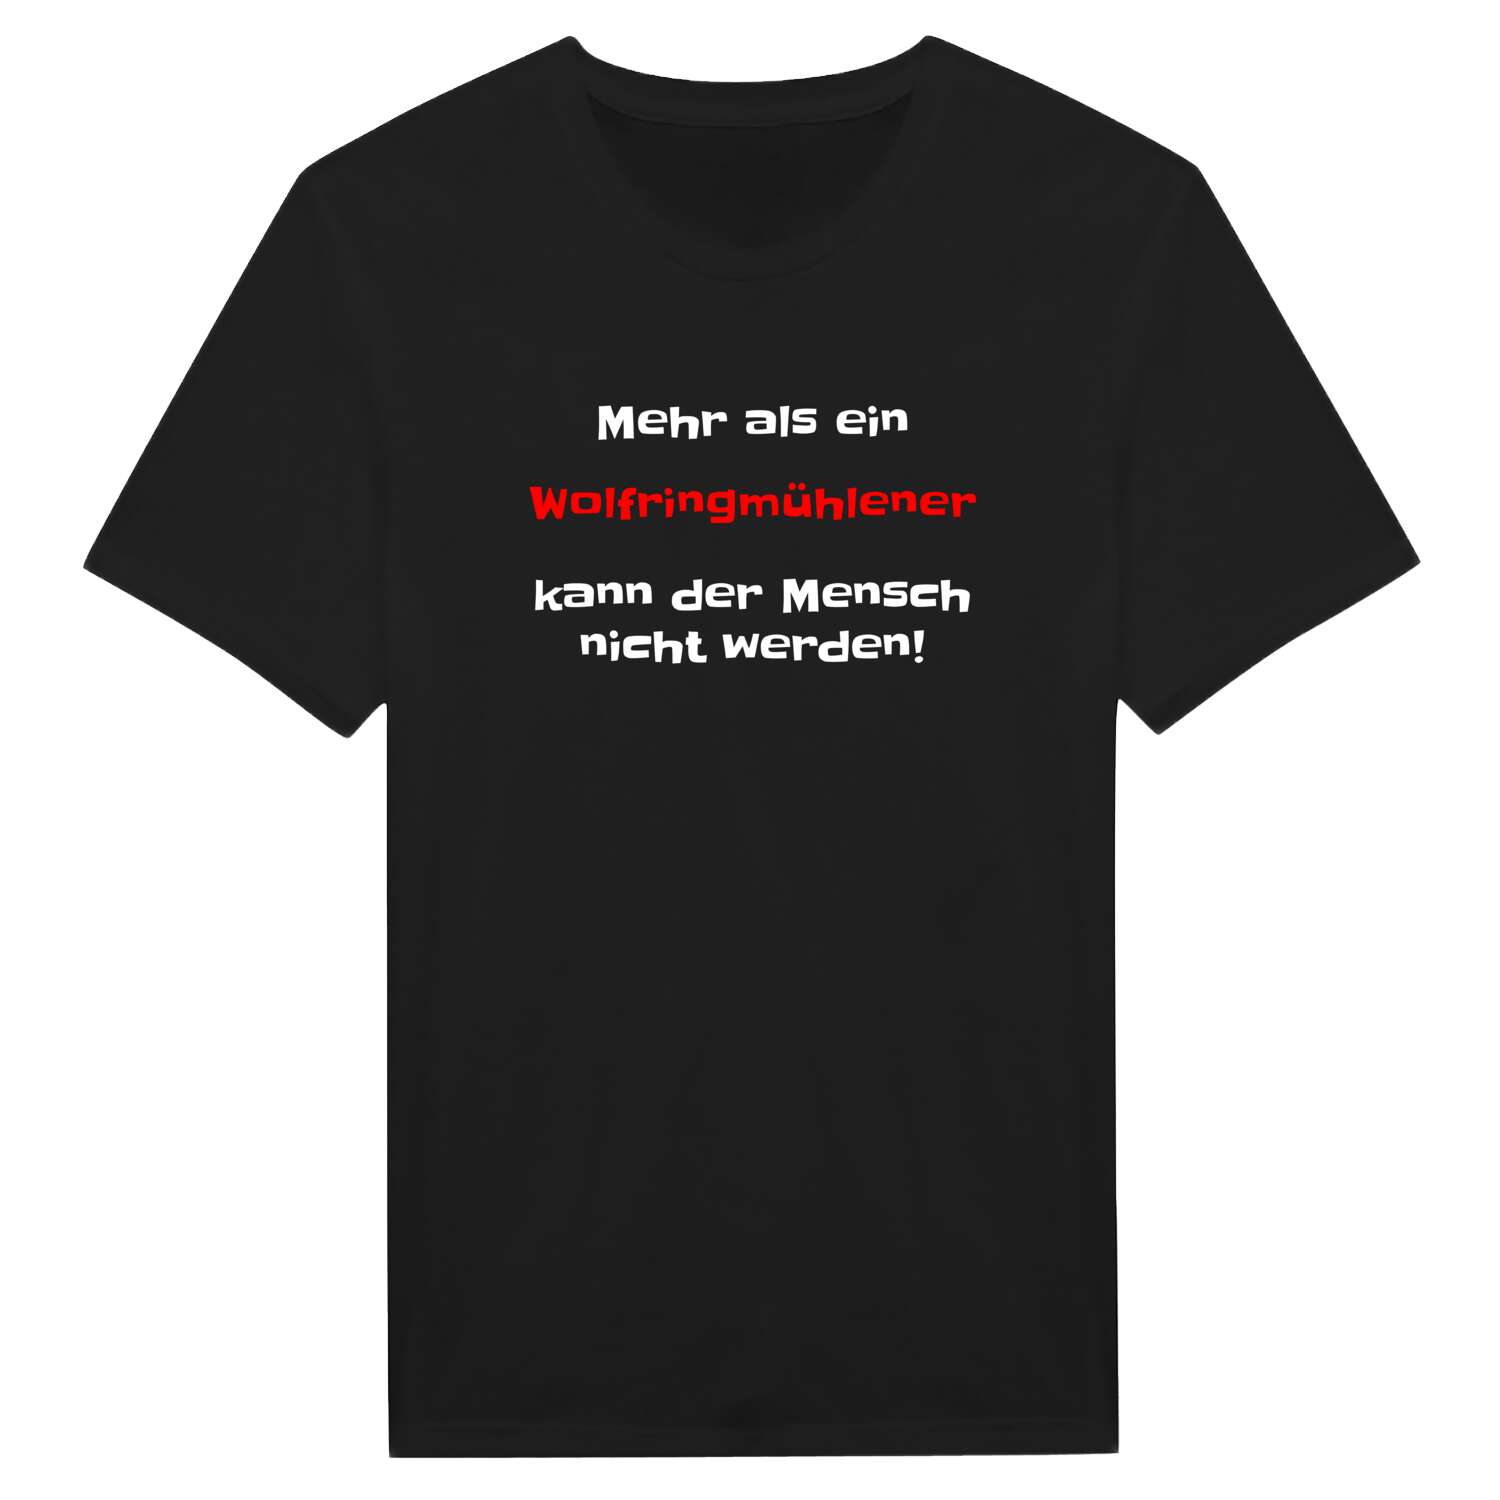 Wolfringmühle T-Shirt »Mehr als ein«